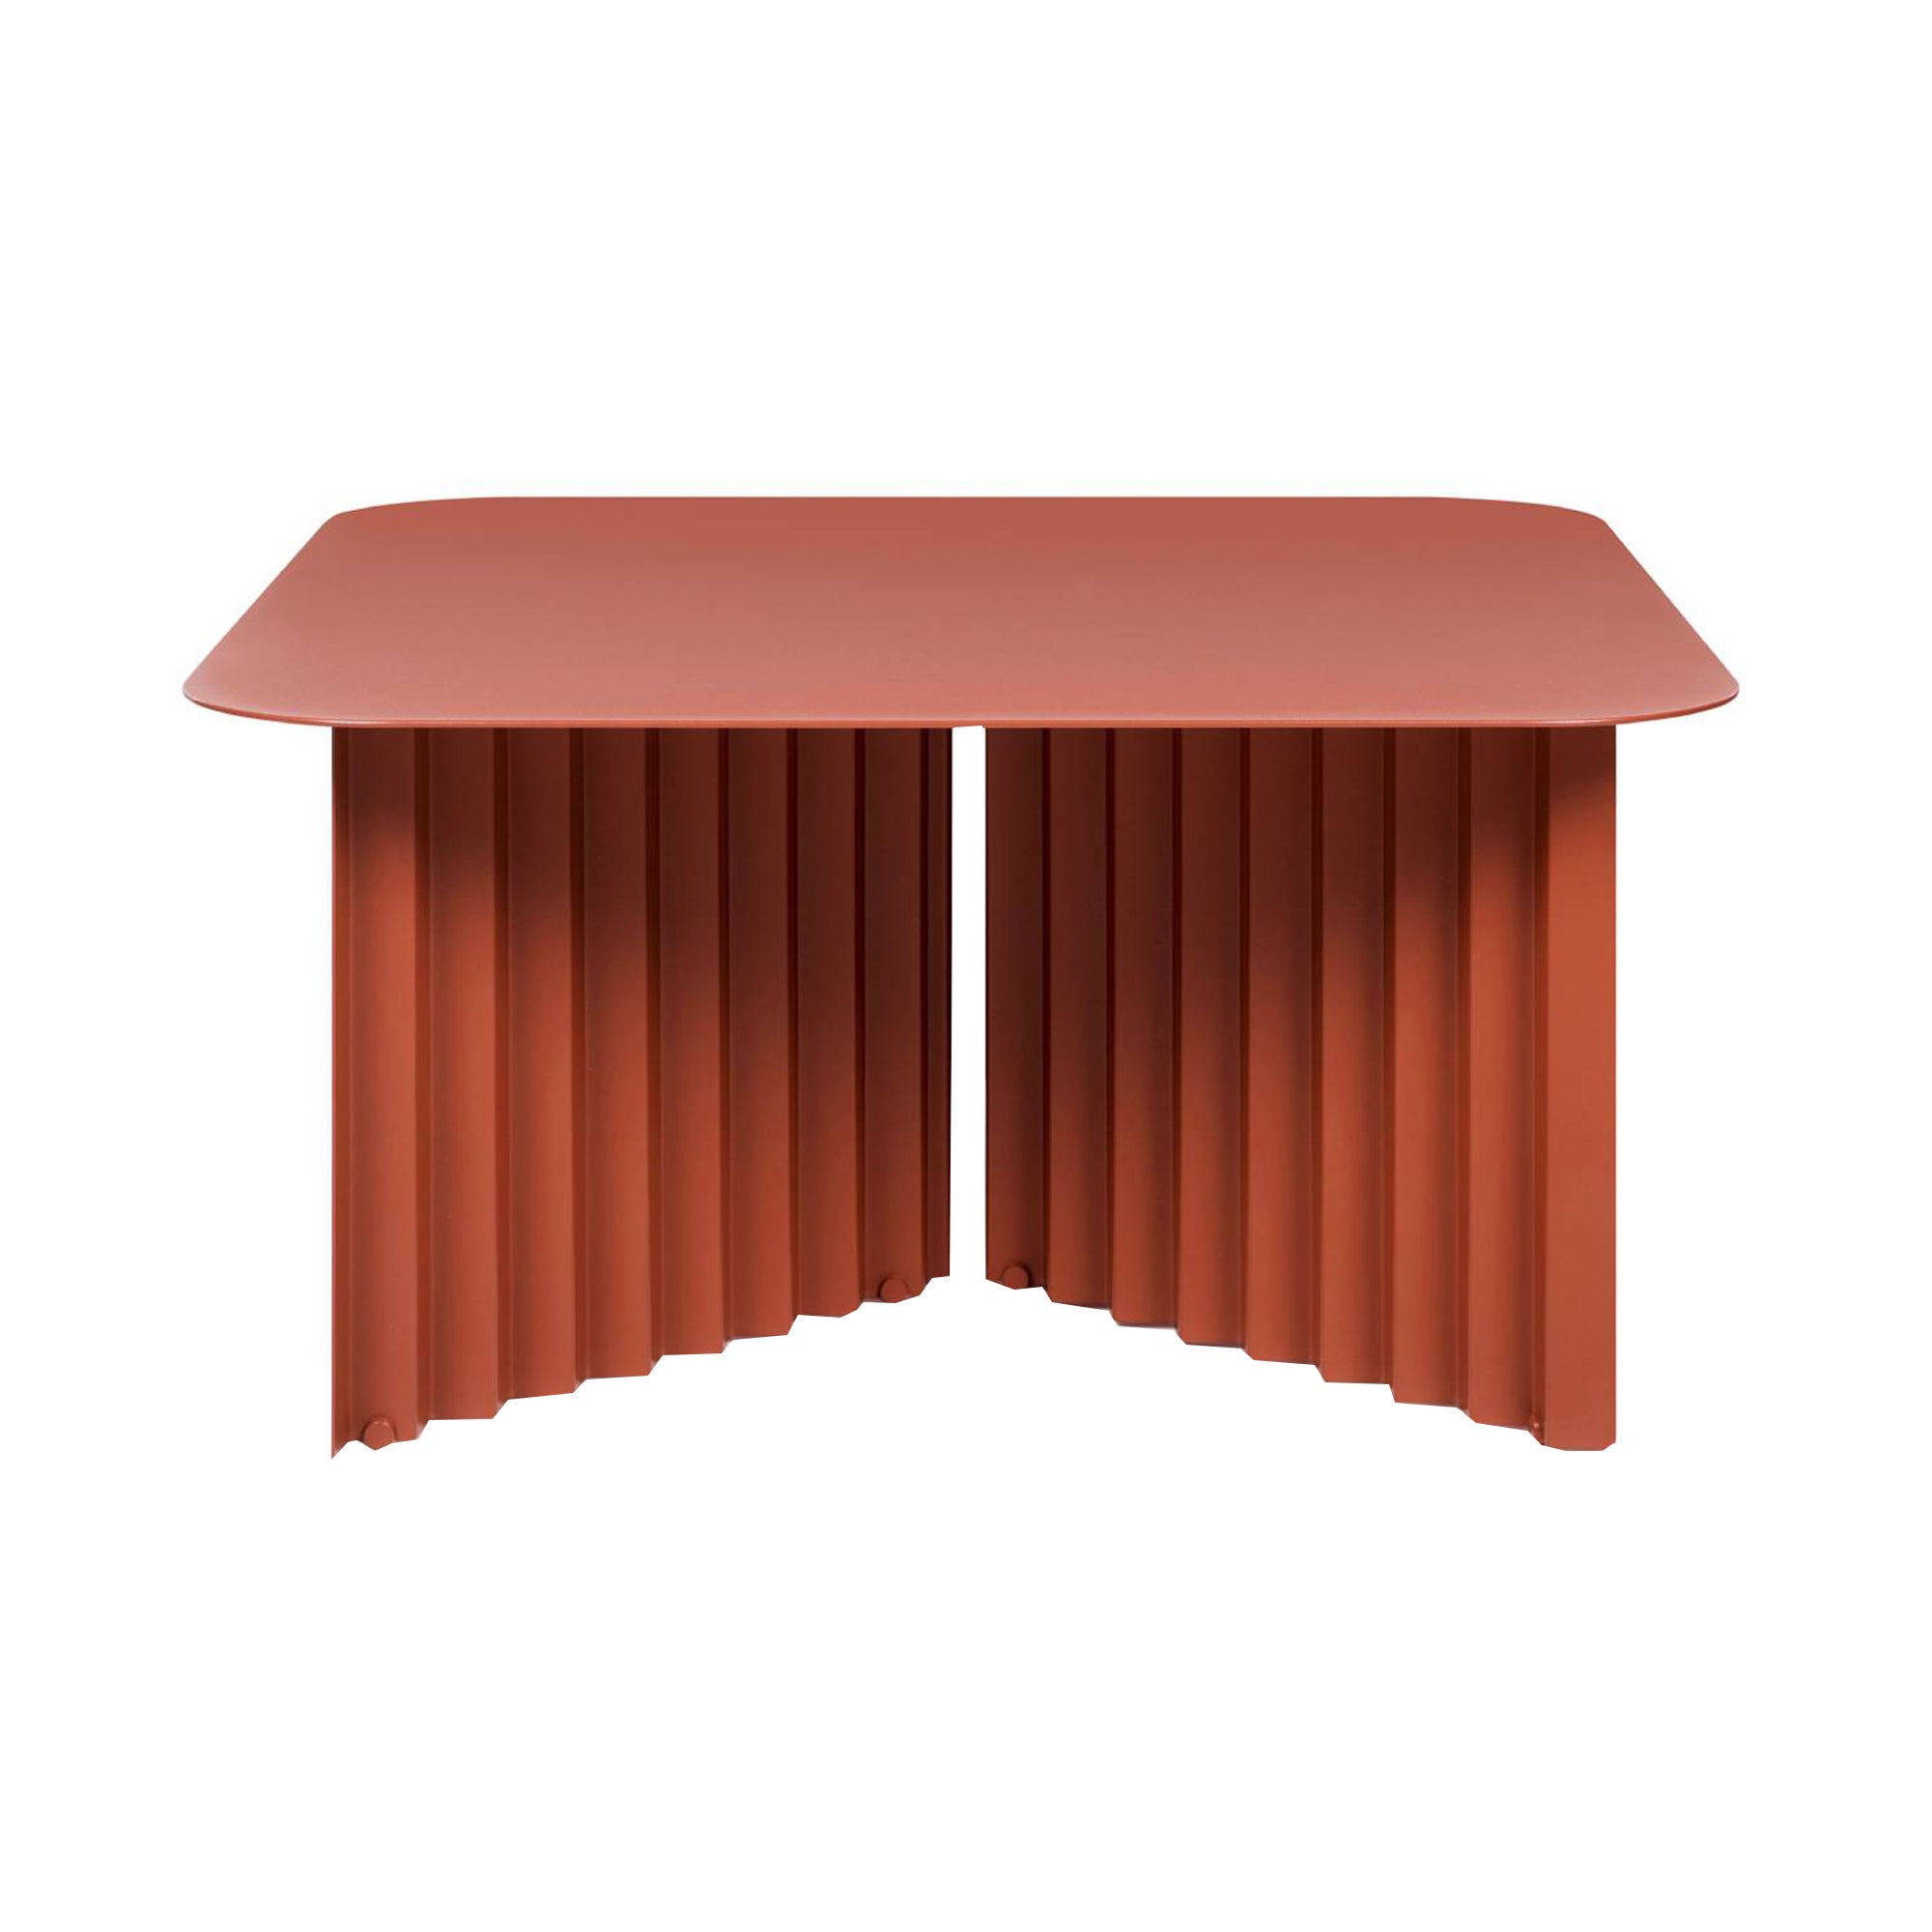 Plec Rectangular Occasional Table: Steel Top + Medium - 27.6